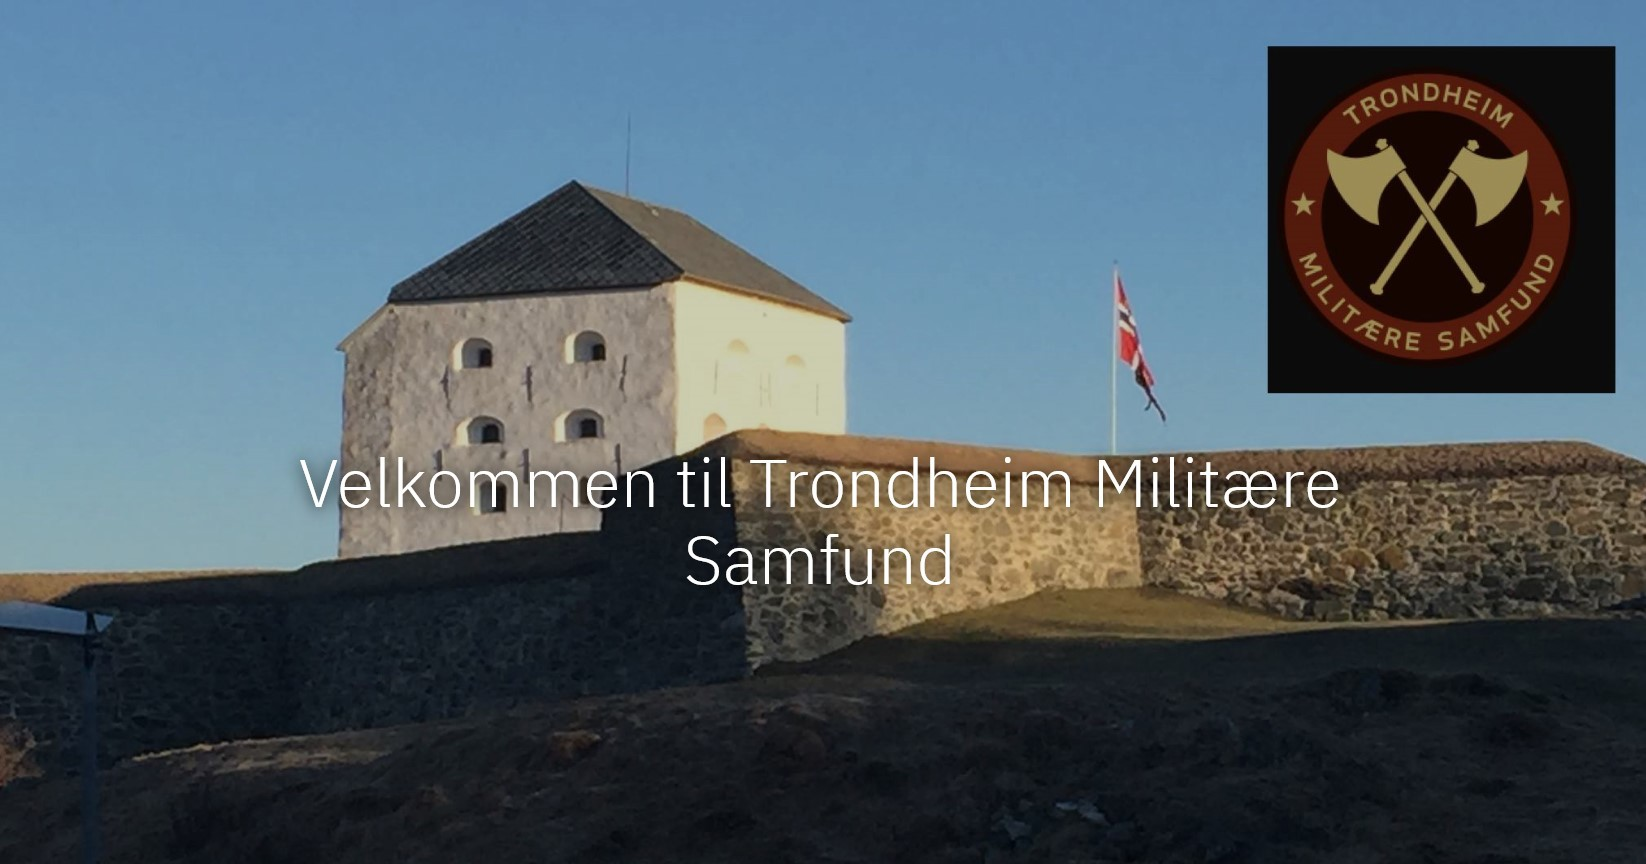 Trondheim Militære Samfund.jpg